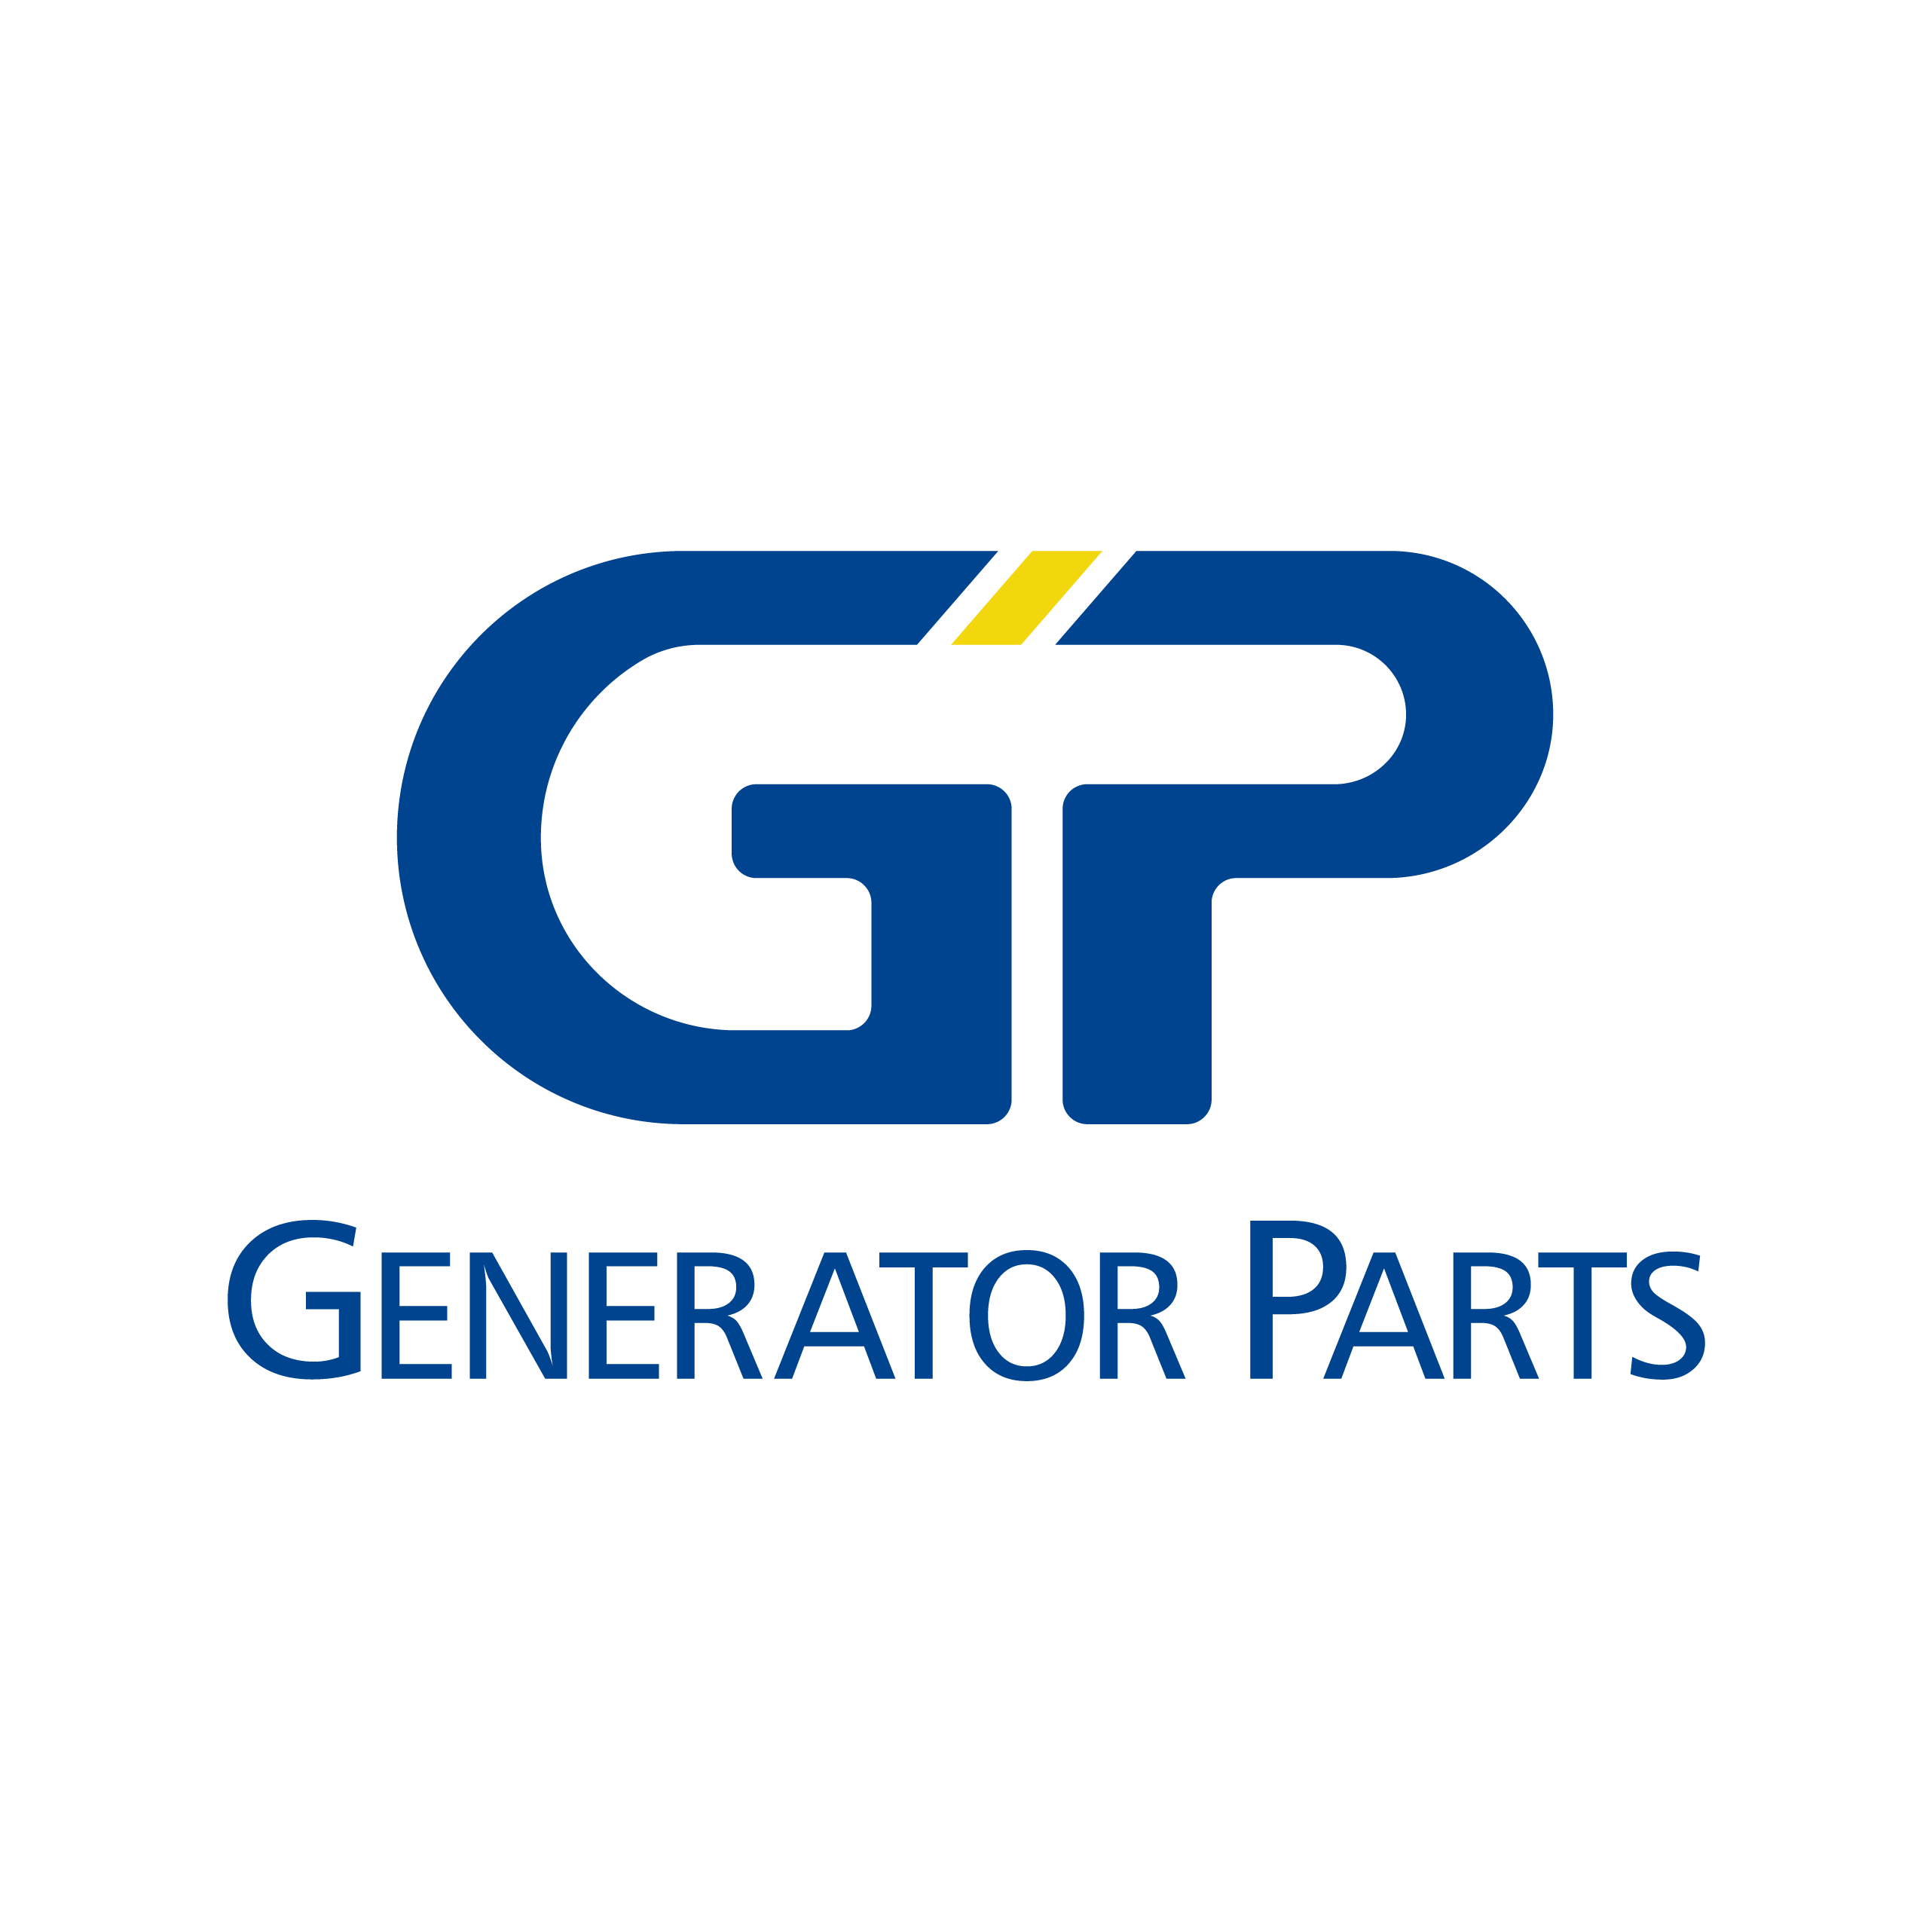 ivparts.com - Generator parts